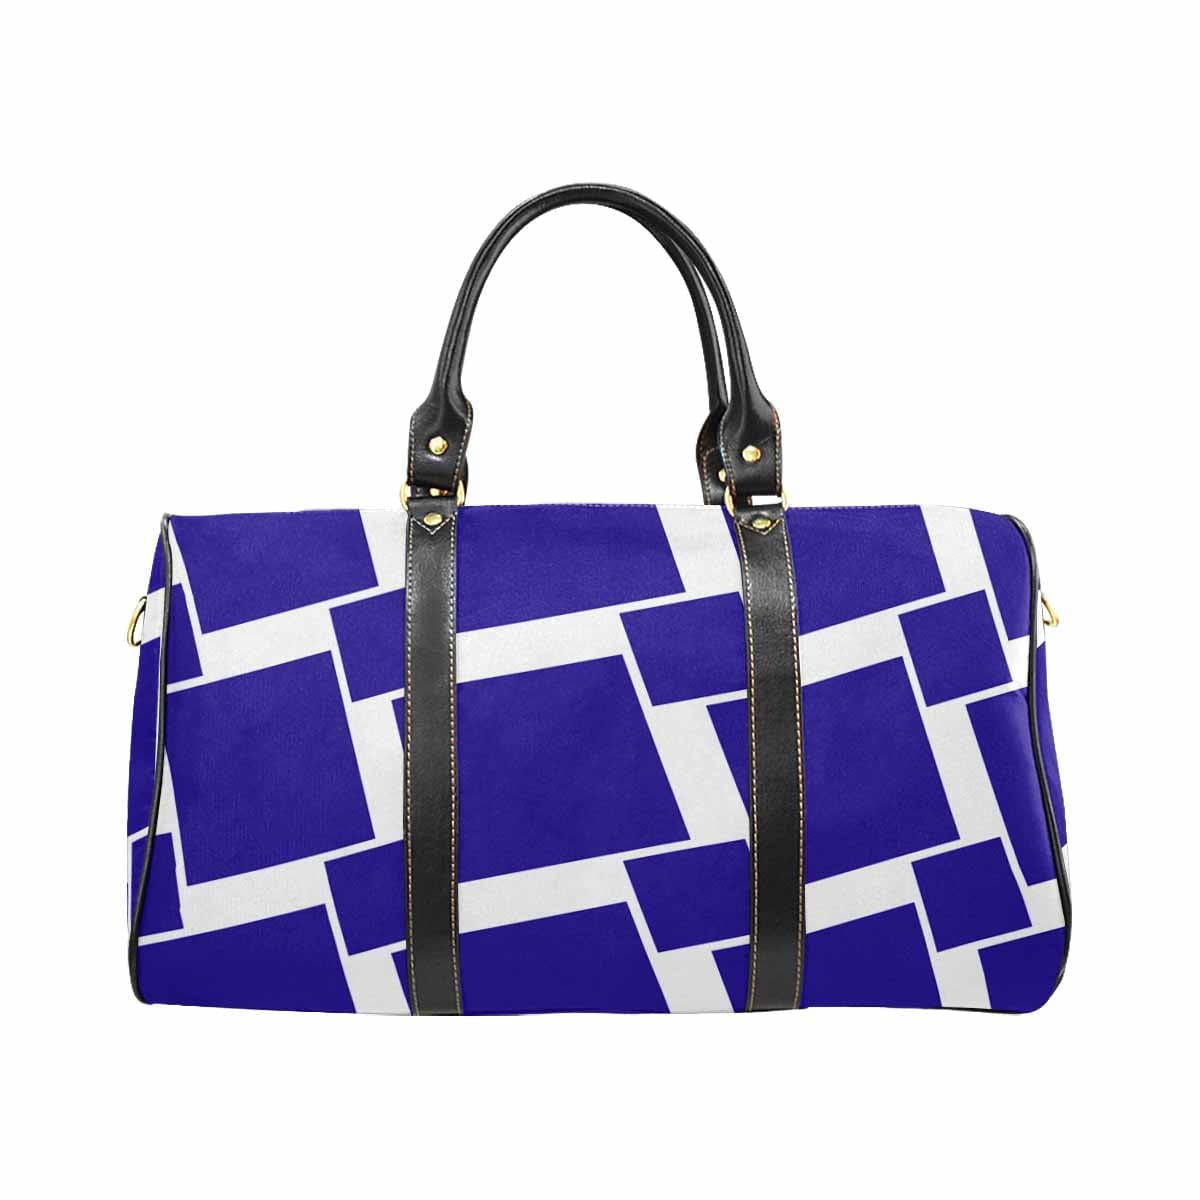 Travel Bag Adjustable Shoulder Strap Carry On Bag Indigo Purple - Bags | Travel